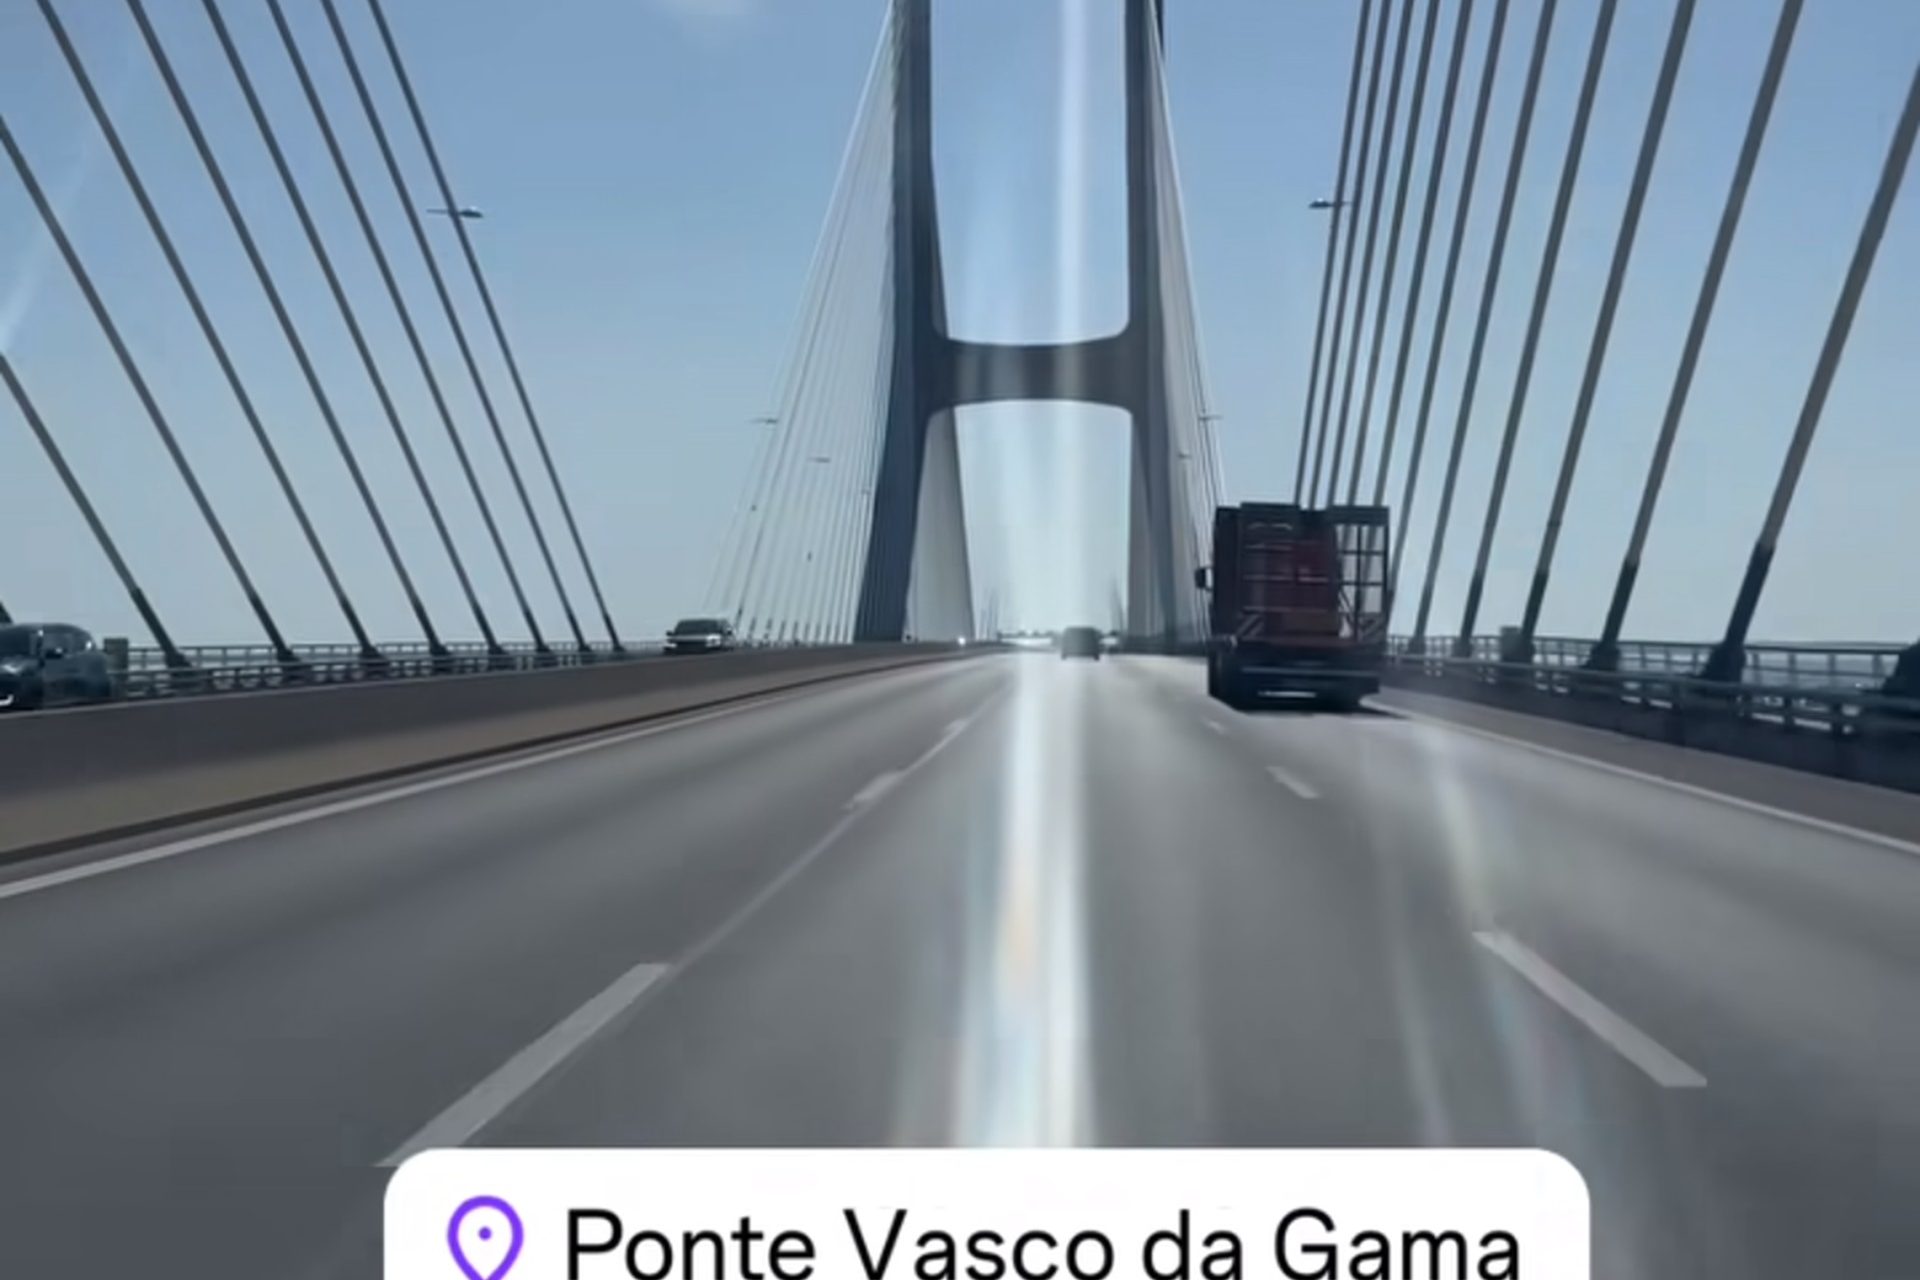 Gran experiencia en el Puente Vasco da Gama